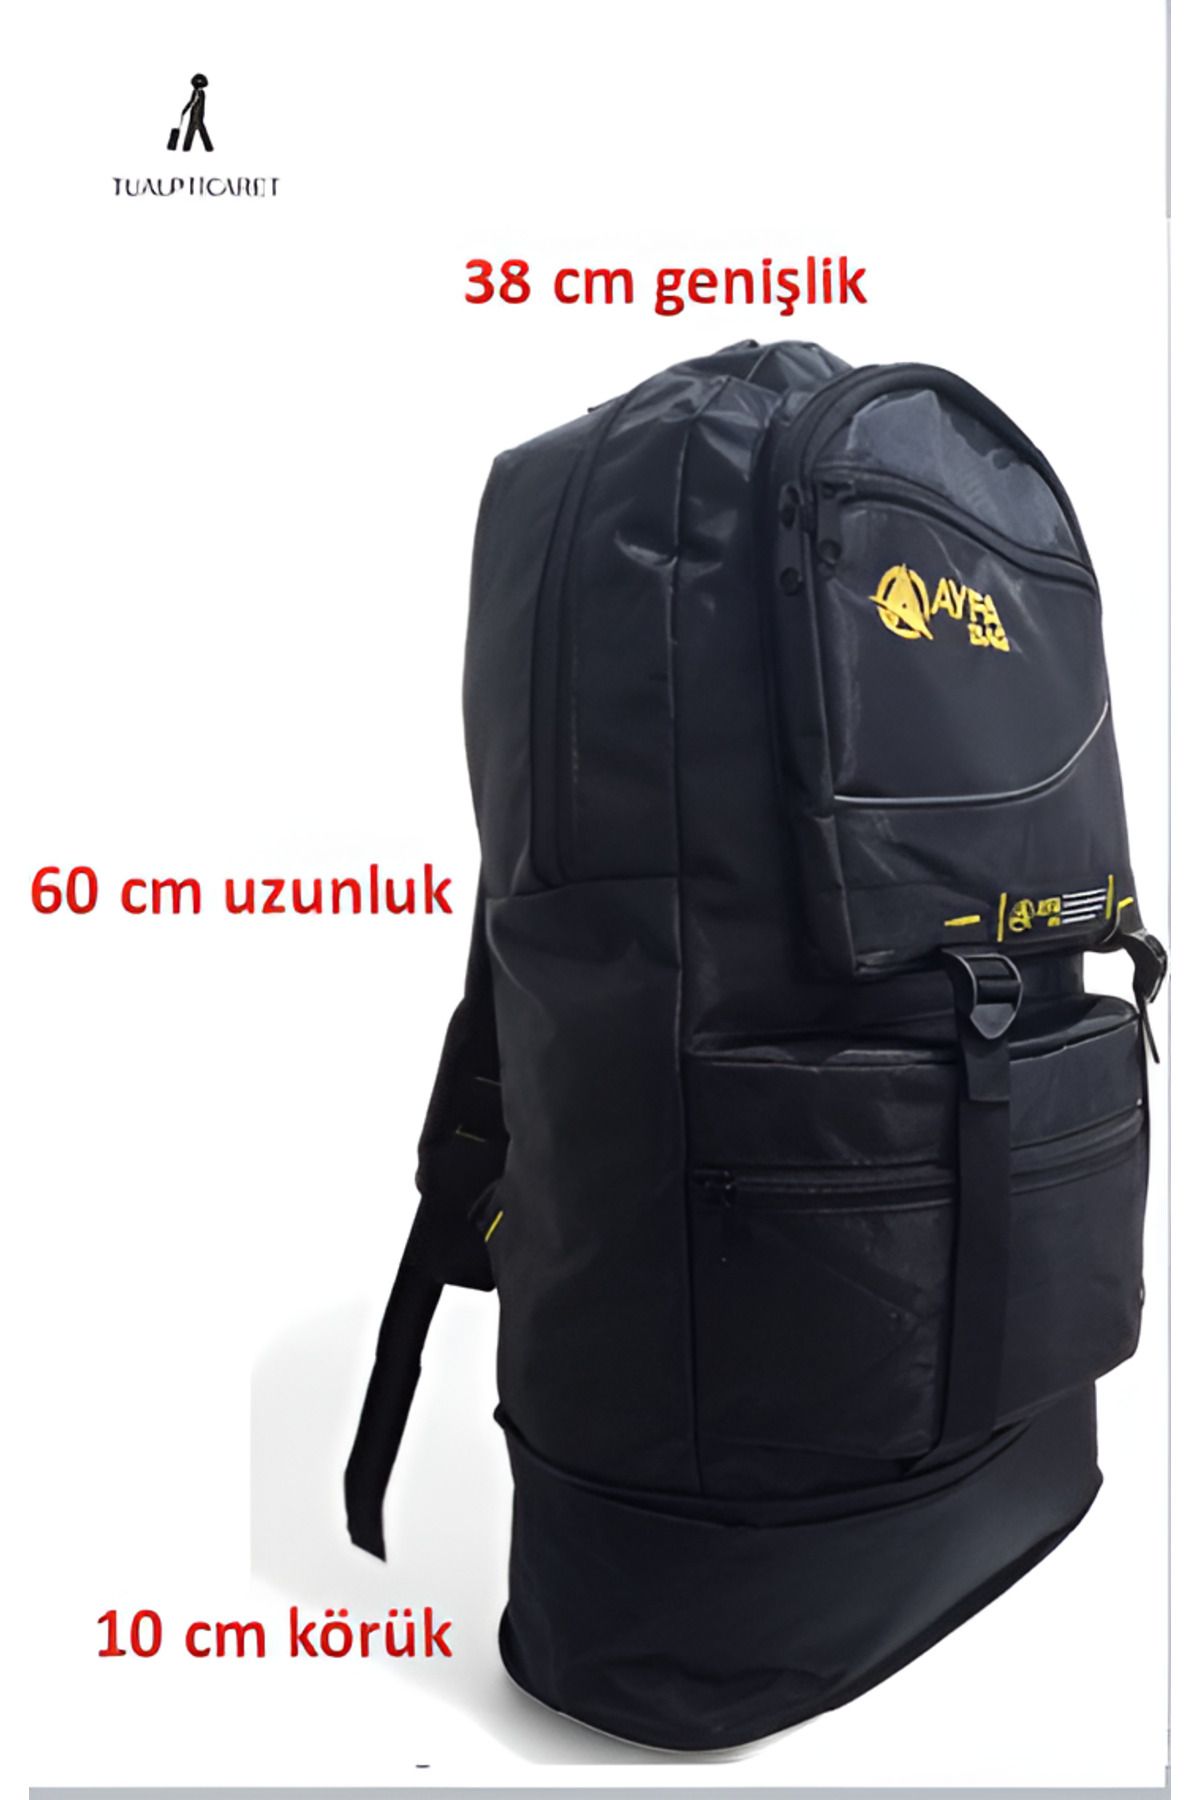 tualpticaret Körüklü Dağcı Sırt Çantası 65 litre Kapasiteli Kamp Çantası seyahat çantası kabin boy valiz